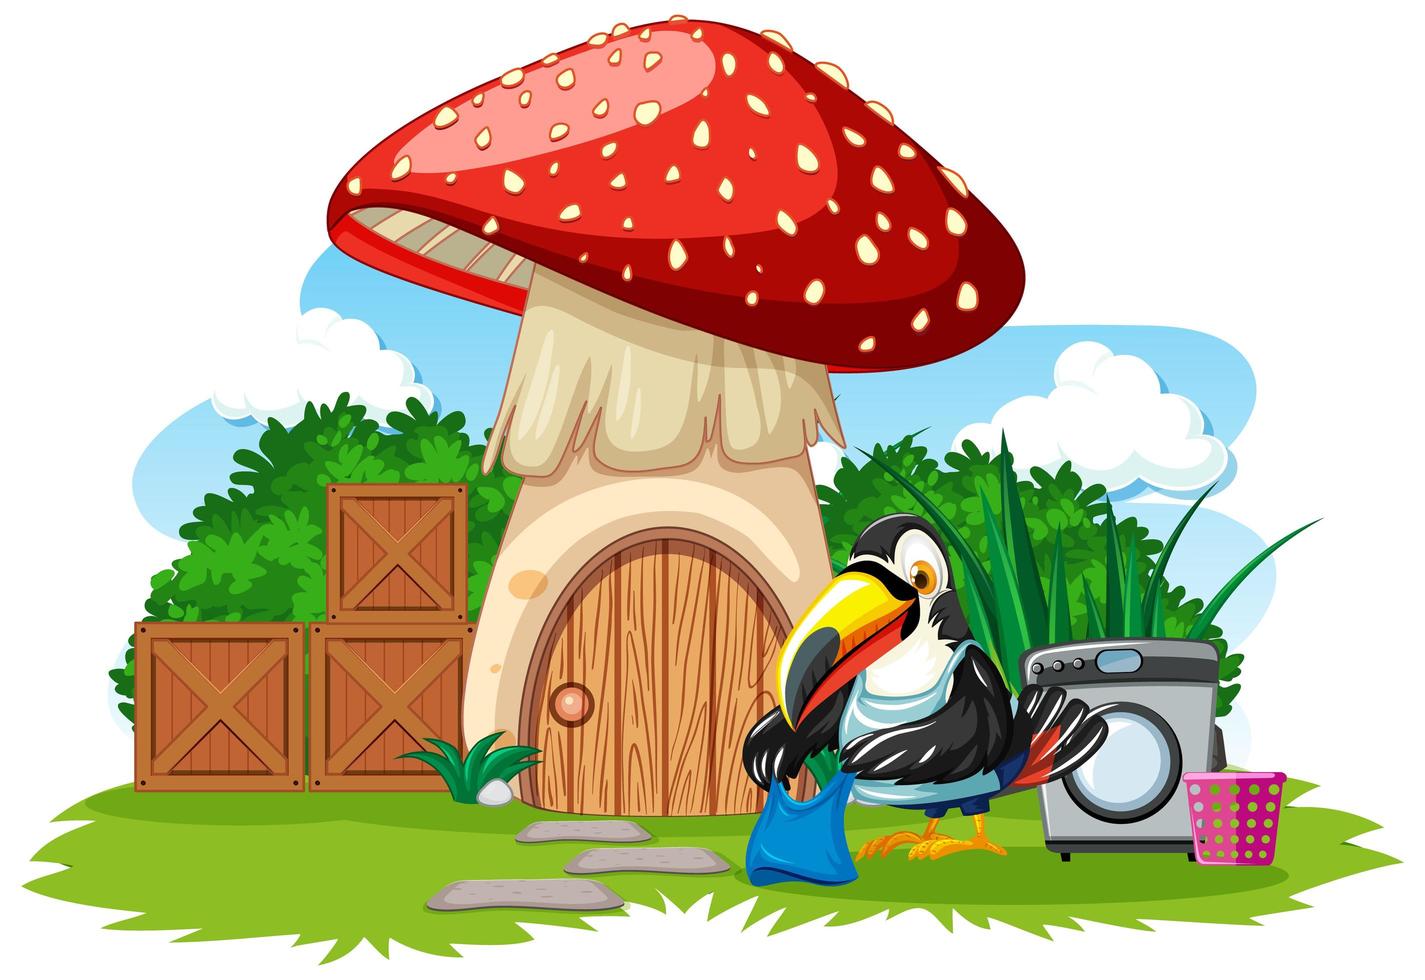 Mushroom house with cute bird  vector